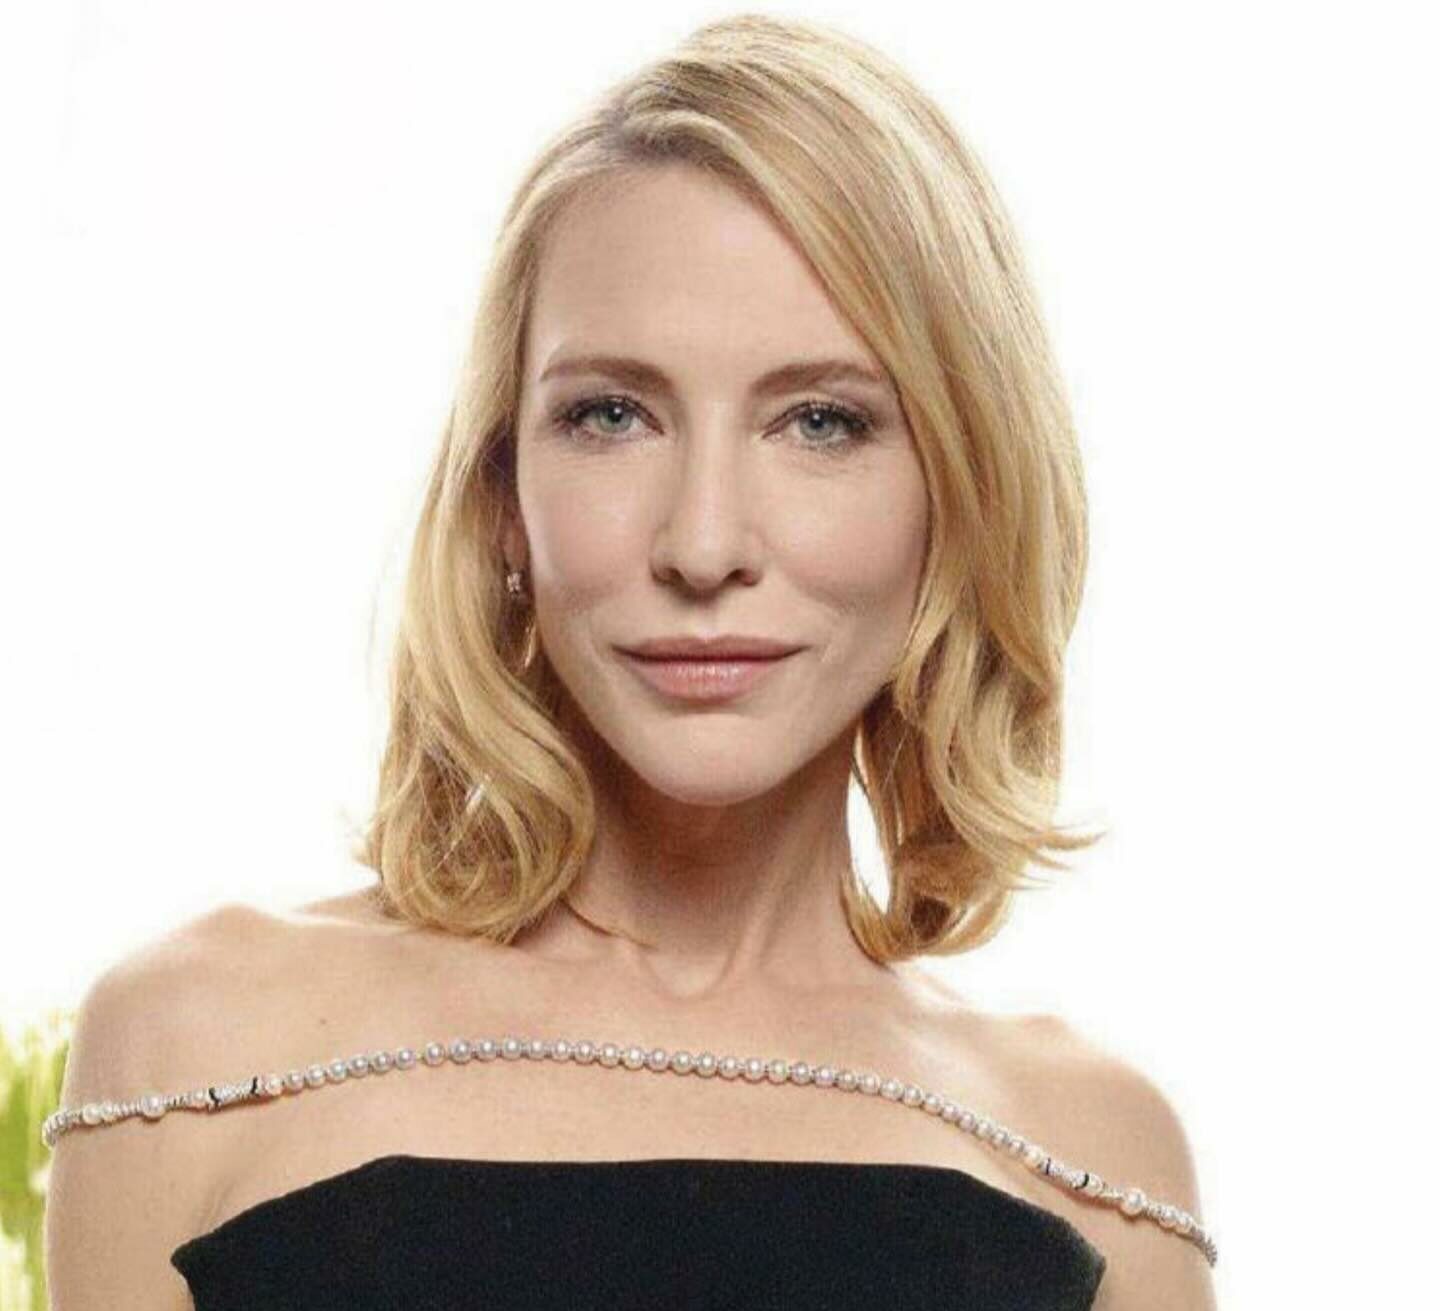 Vestido de Cate Blanchett causó conmoción en Cannes (+video)